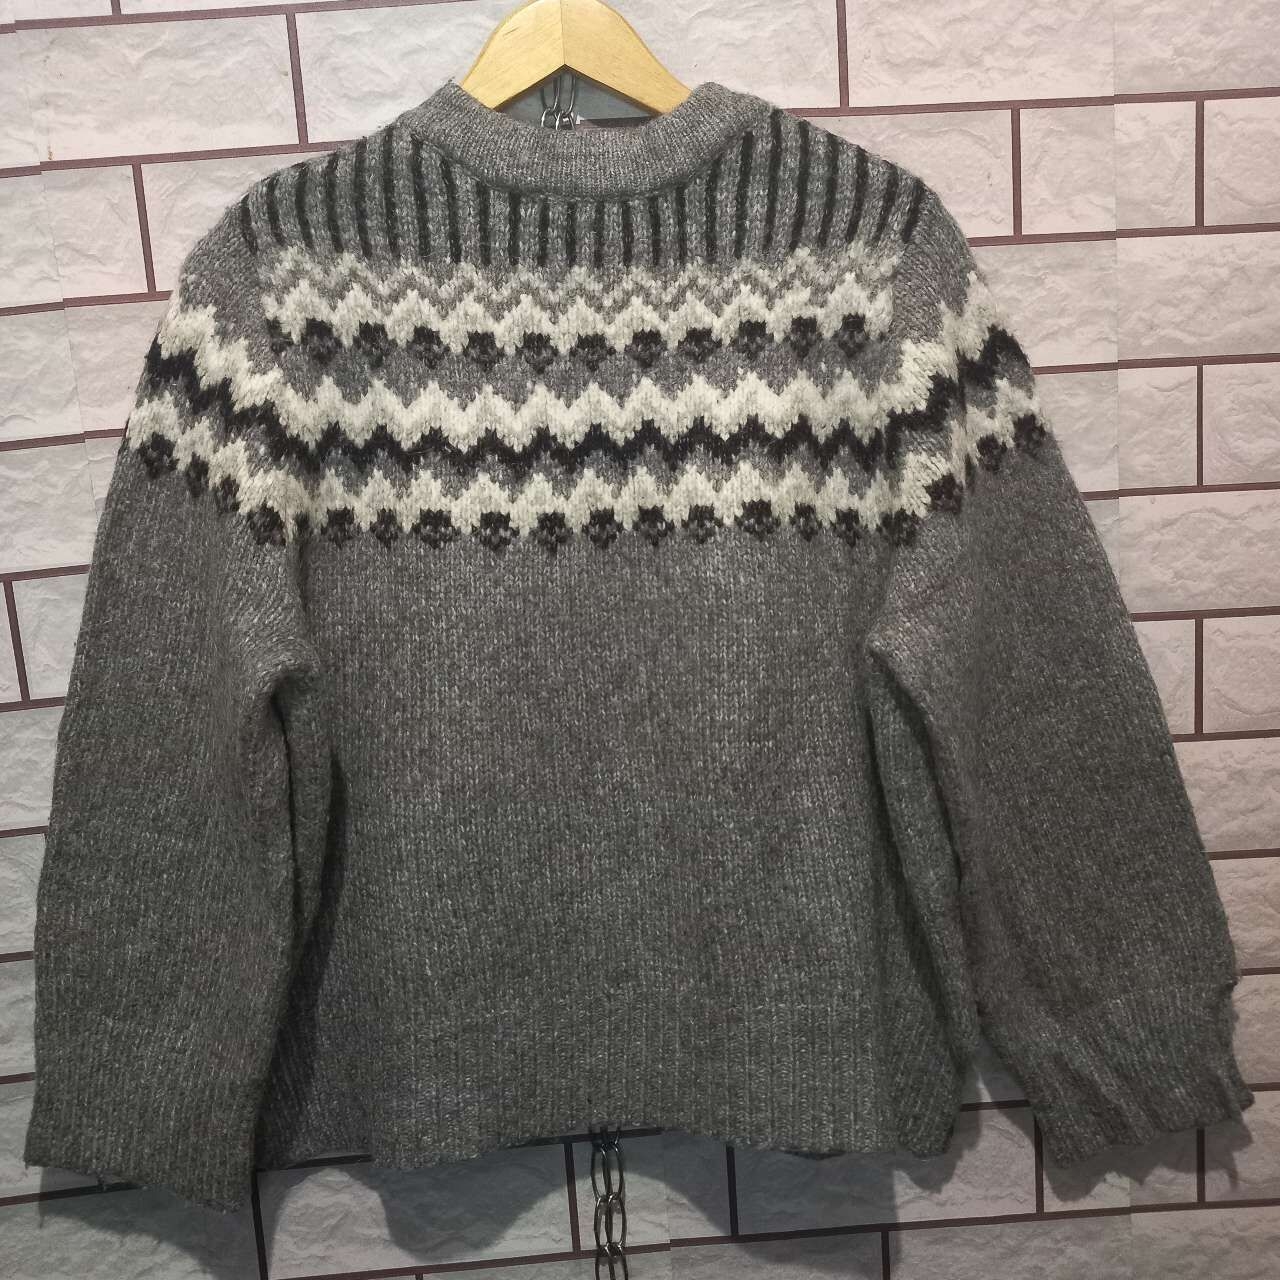 Zara Grey Jaguard Sweater